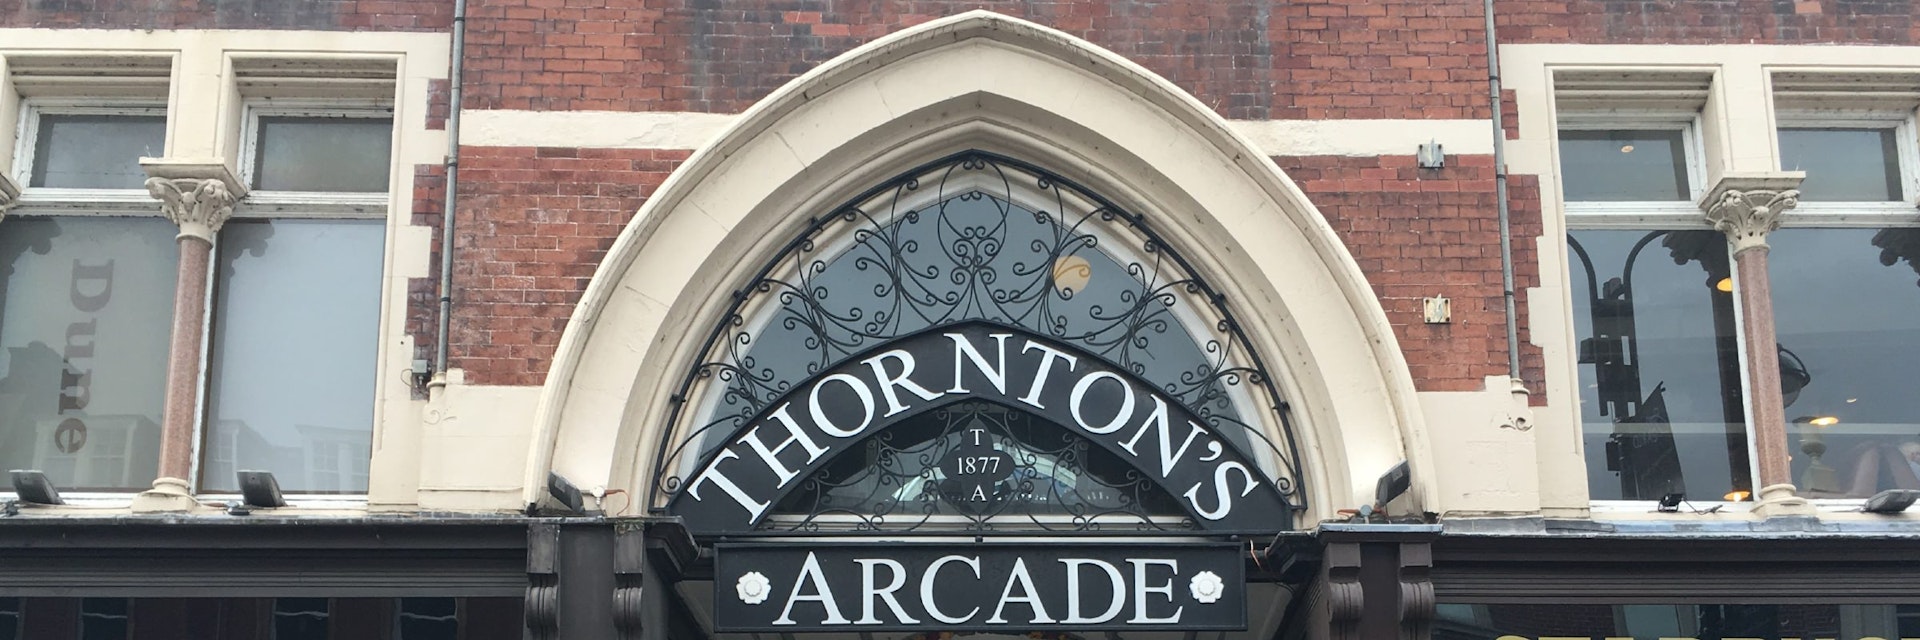 Thornton's Arcade entraceway off Briggate